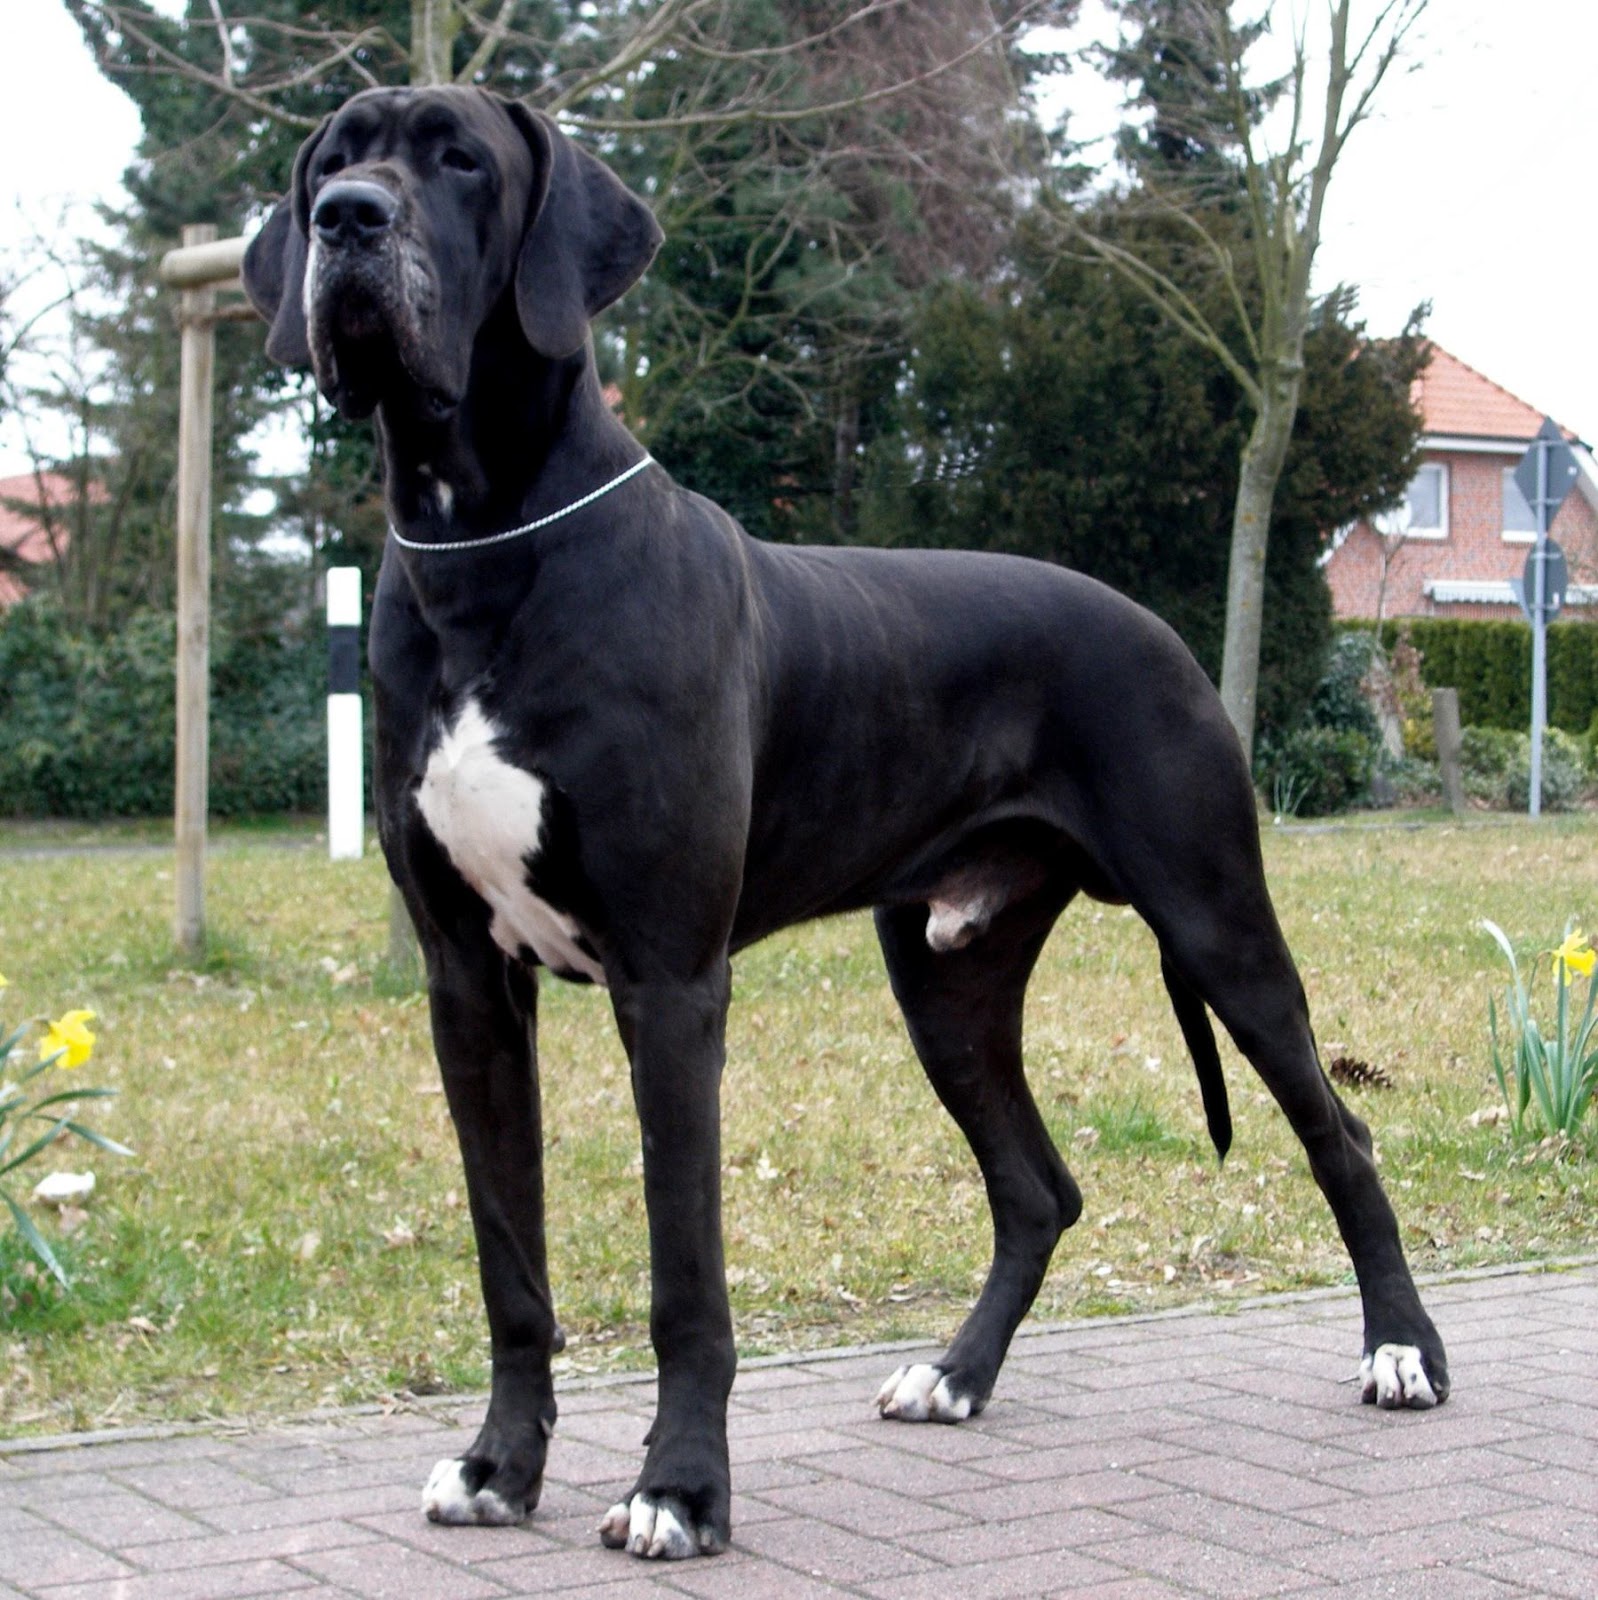 Cute Dogs: Black great Danes